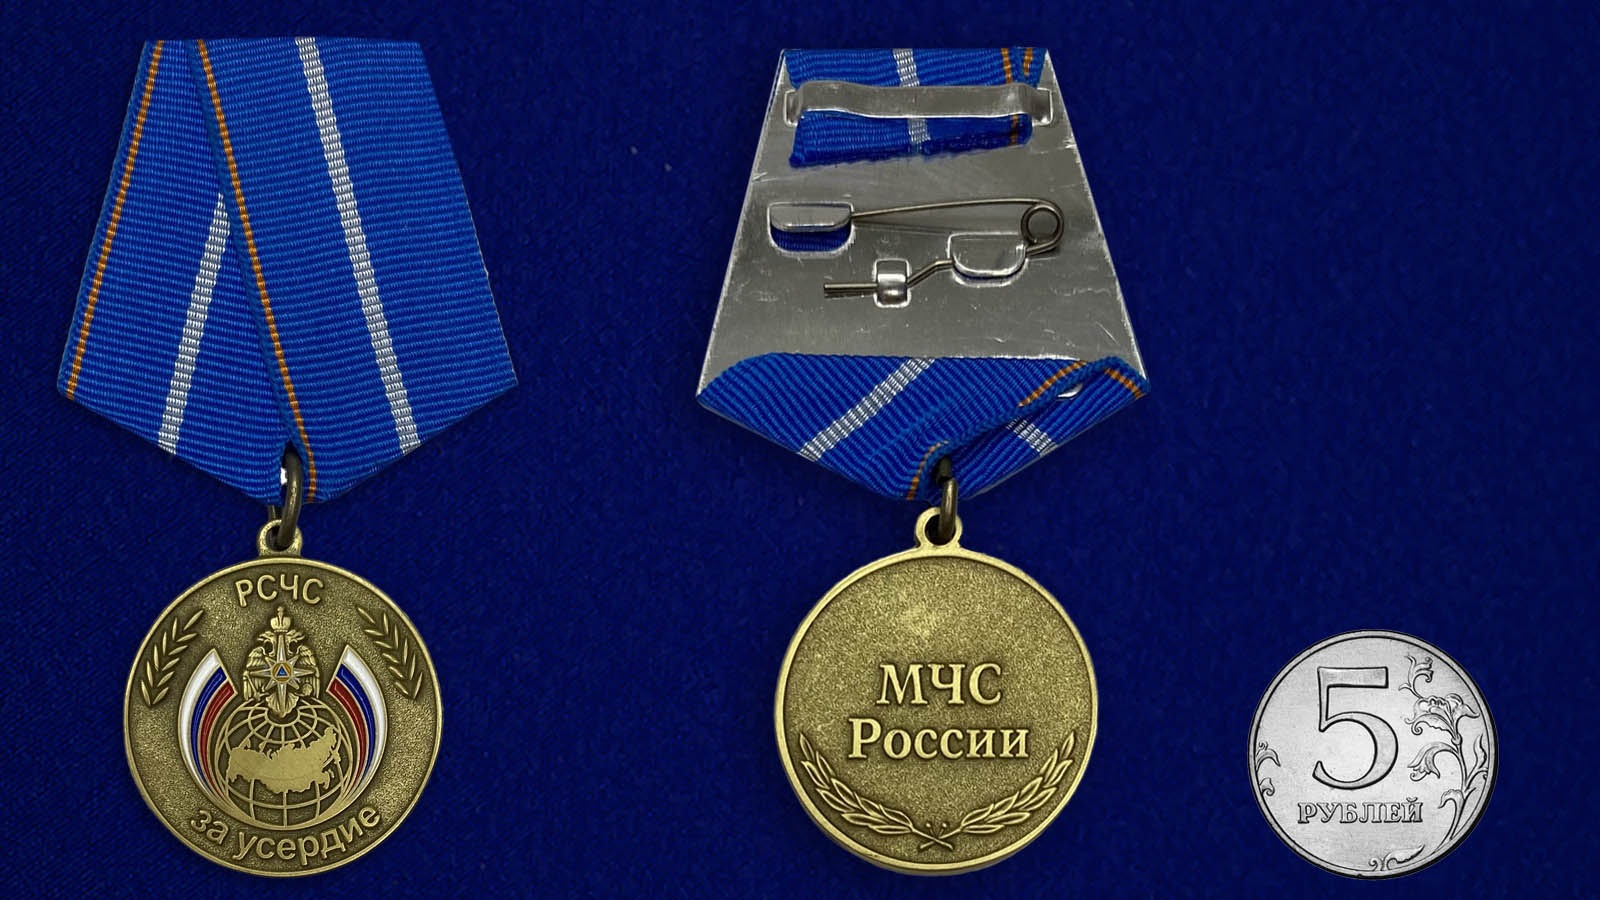 Купить медаль За усердие МЧС России на подставке онлайн выгодно